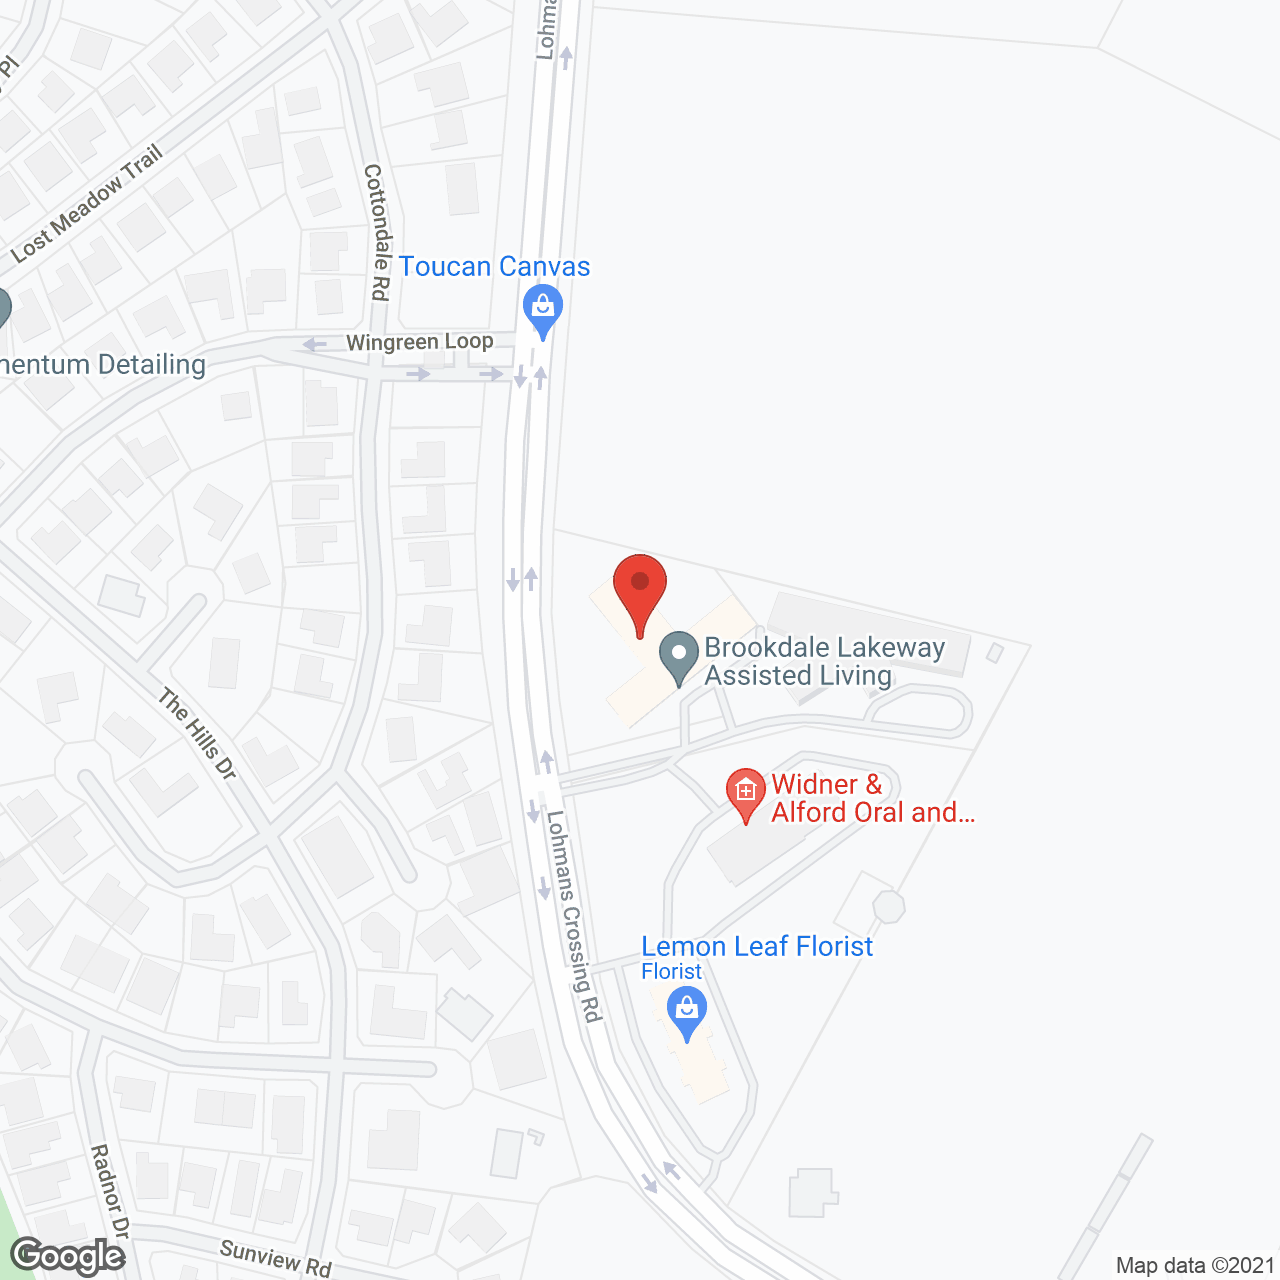 Brookdale Lakeway in google map